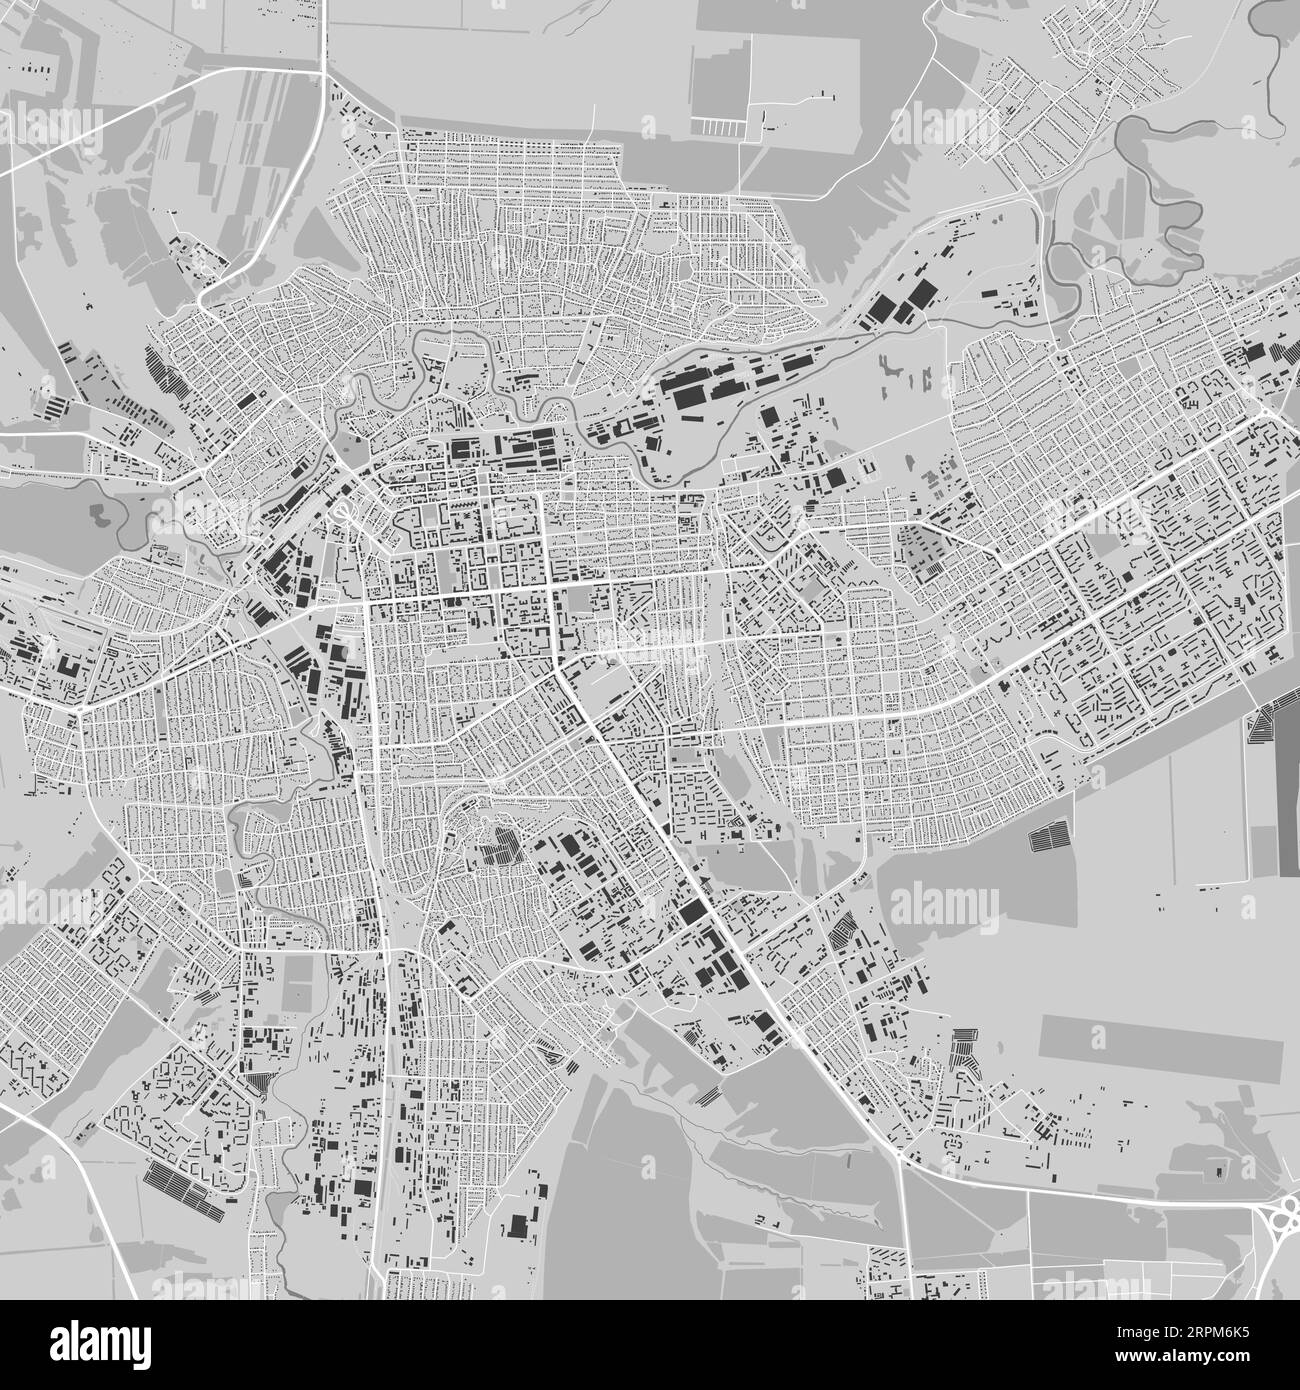 Carte de Luhansk ville, Ukraine. Affiche urbaine en noir et blanc. Image de la carte routière avec vue de la zone urbaine. Illustration de Vecteur